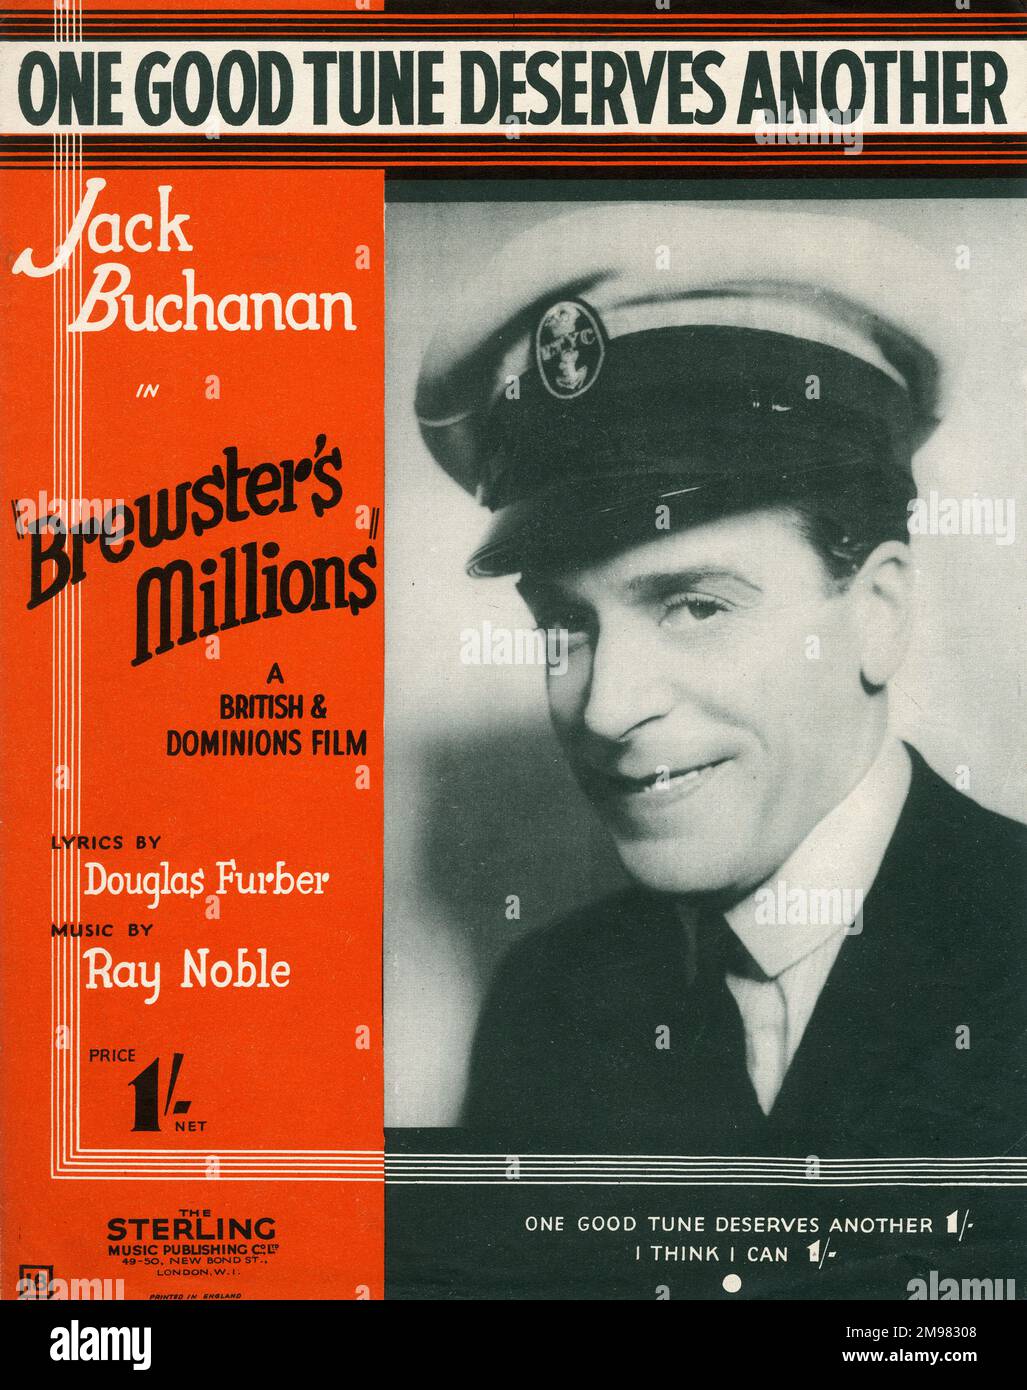 Couverture musicale, une bonne mélodie mérite une autre, paroles de Douglas Furber, musique de Ray Noble, chantée par Jack Buchanan dans le film des millions de Brewster. Banque D'Images